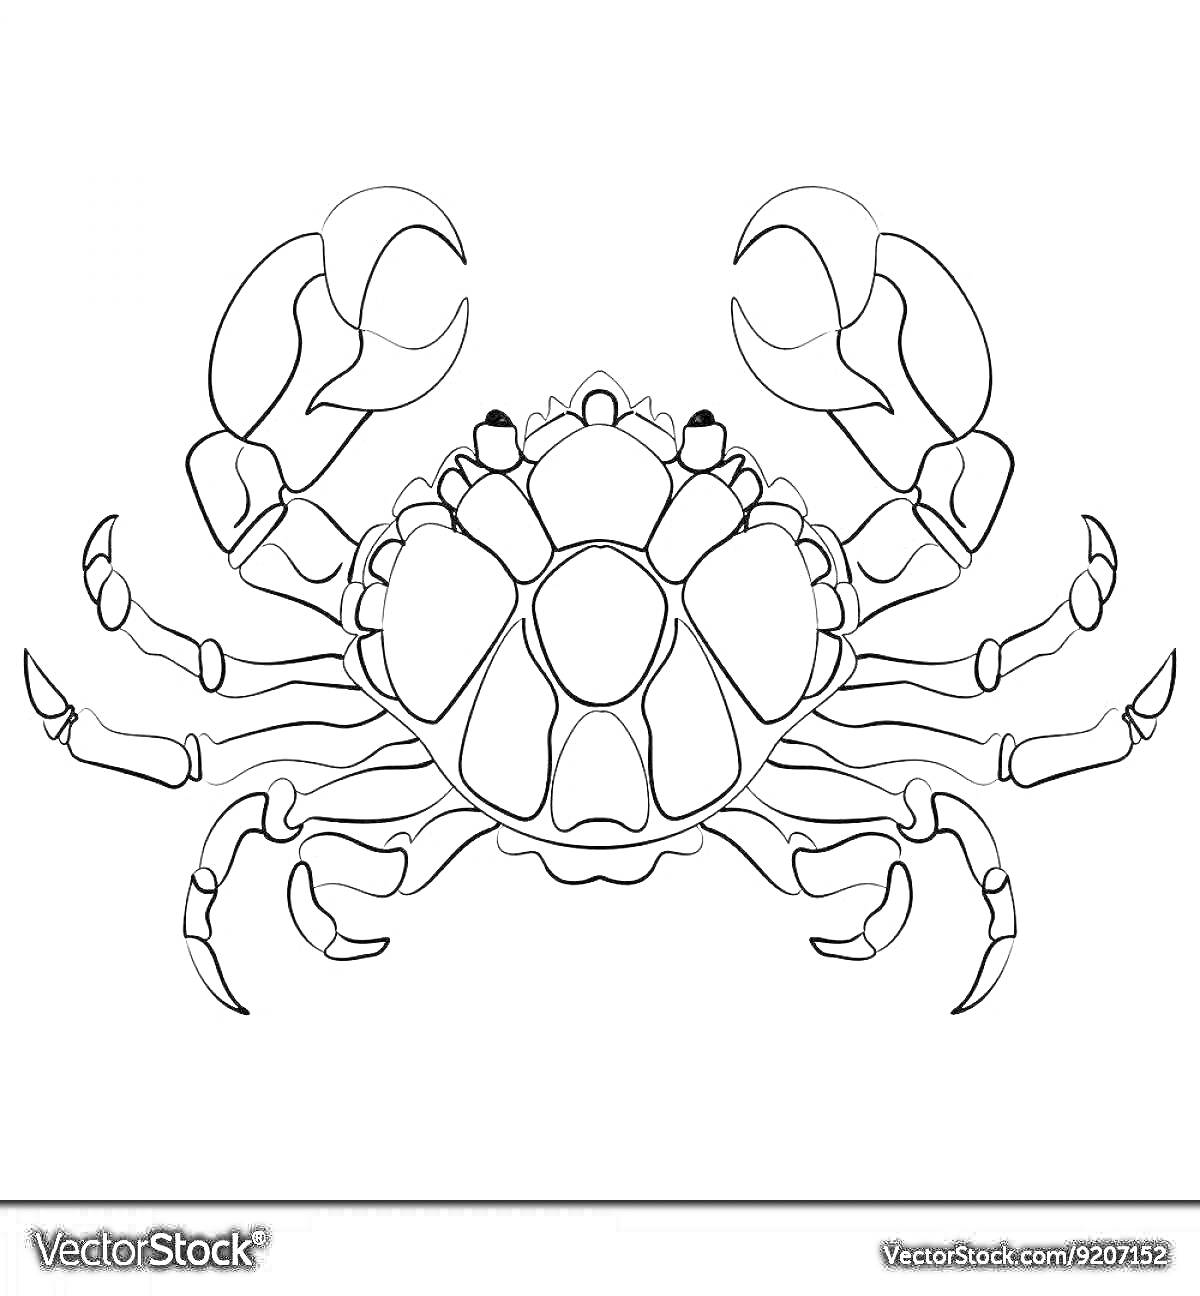 Раскраска Знак зодиака Рак - изображение краба с большими клешнями и шестью ногами.